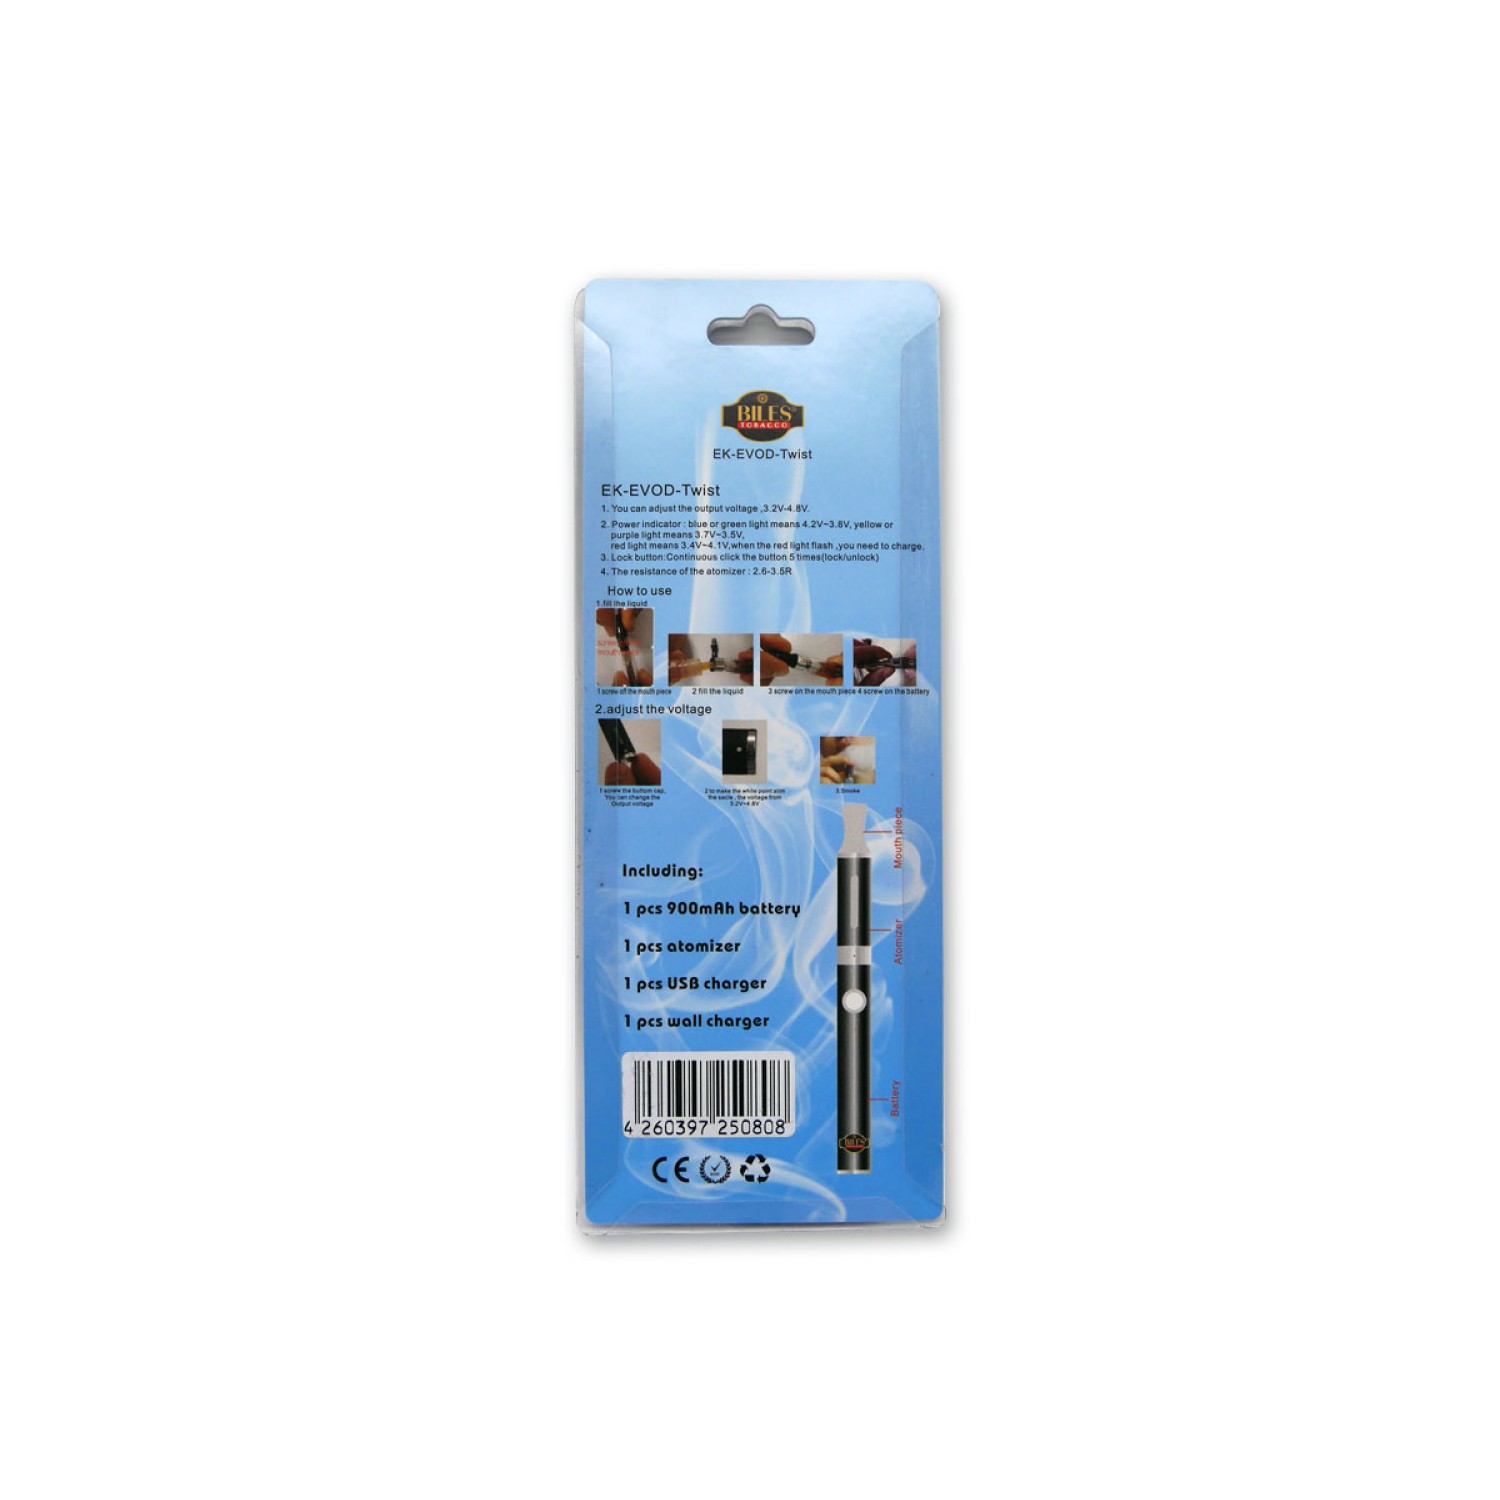 Biles - E-Zigarette - Blau - Elektronische Zigarette - inkl. Akku und Ladegerät